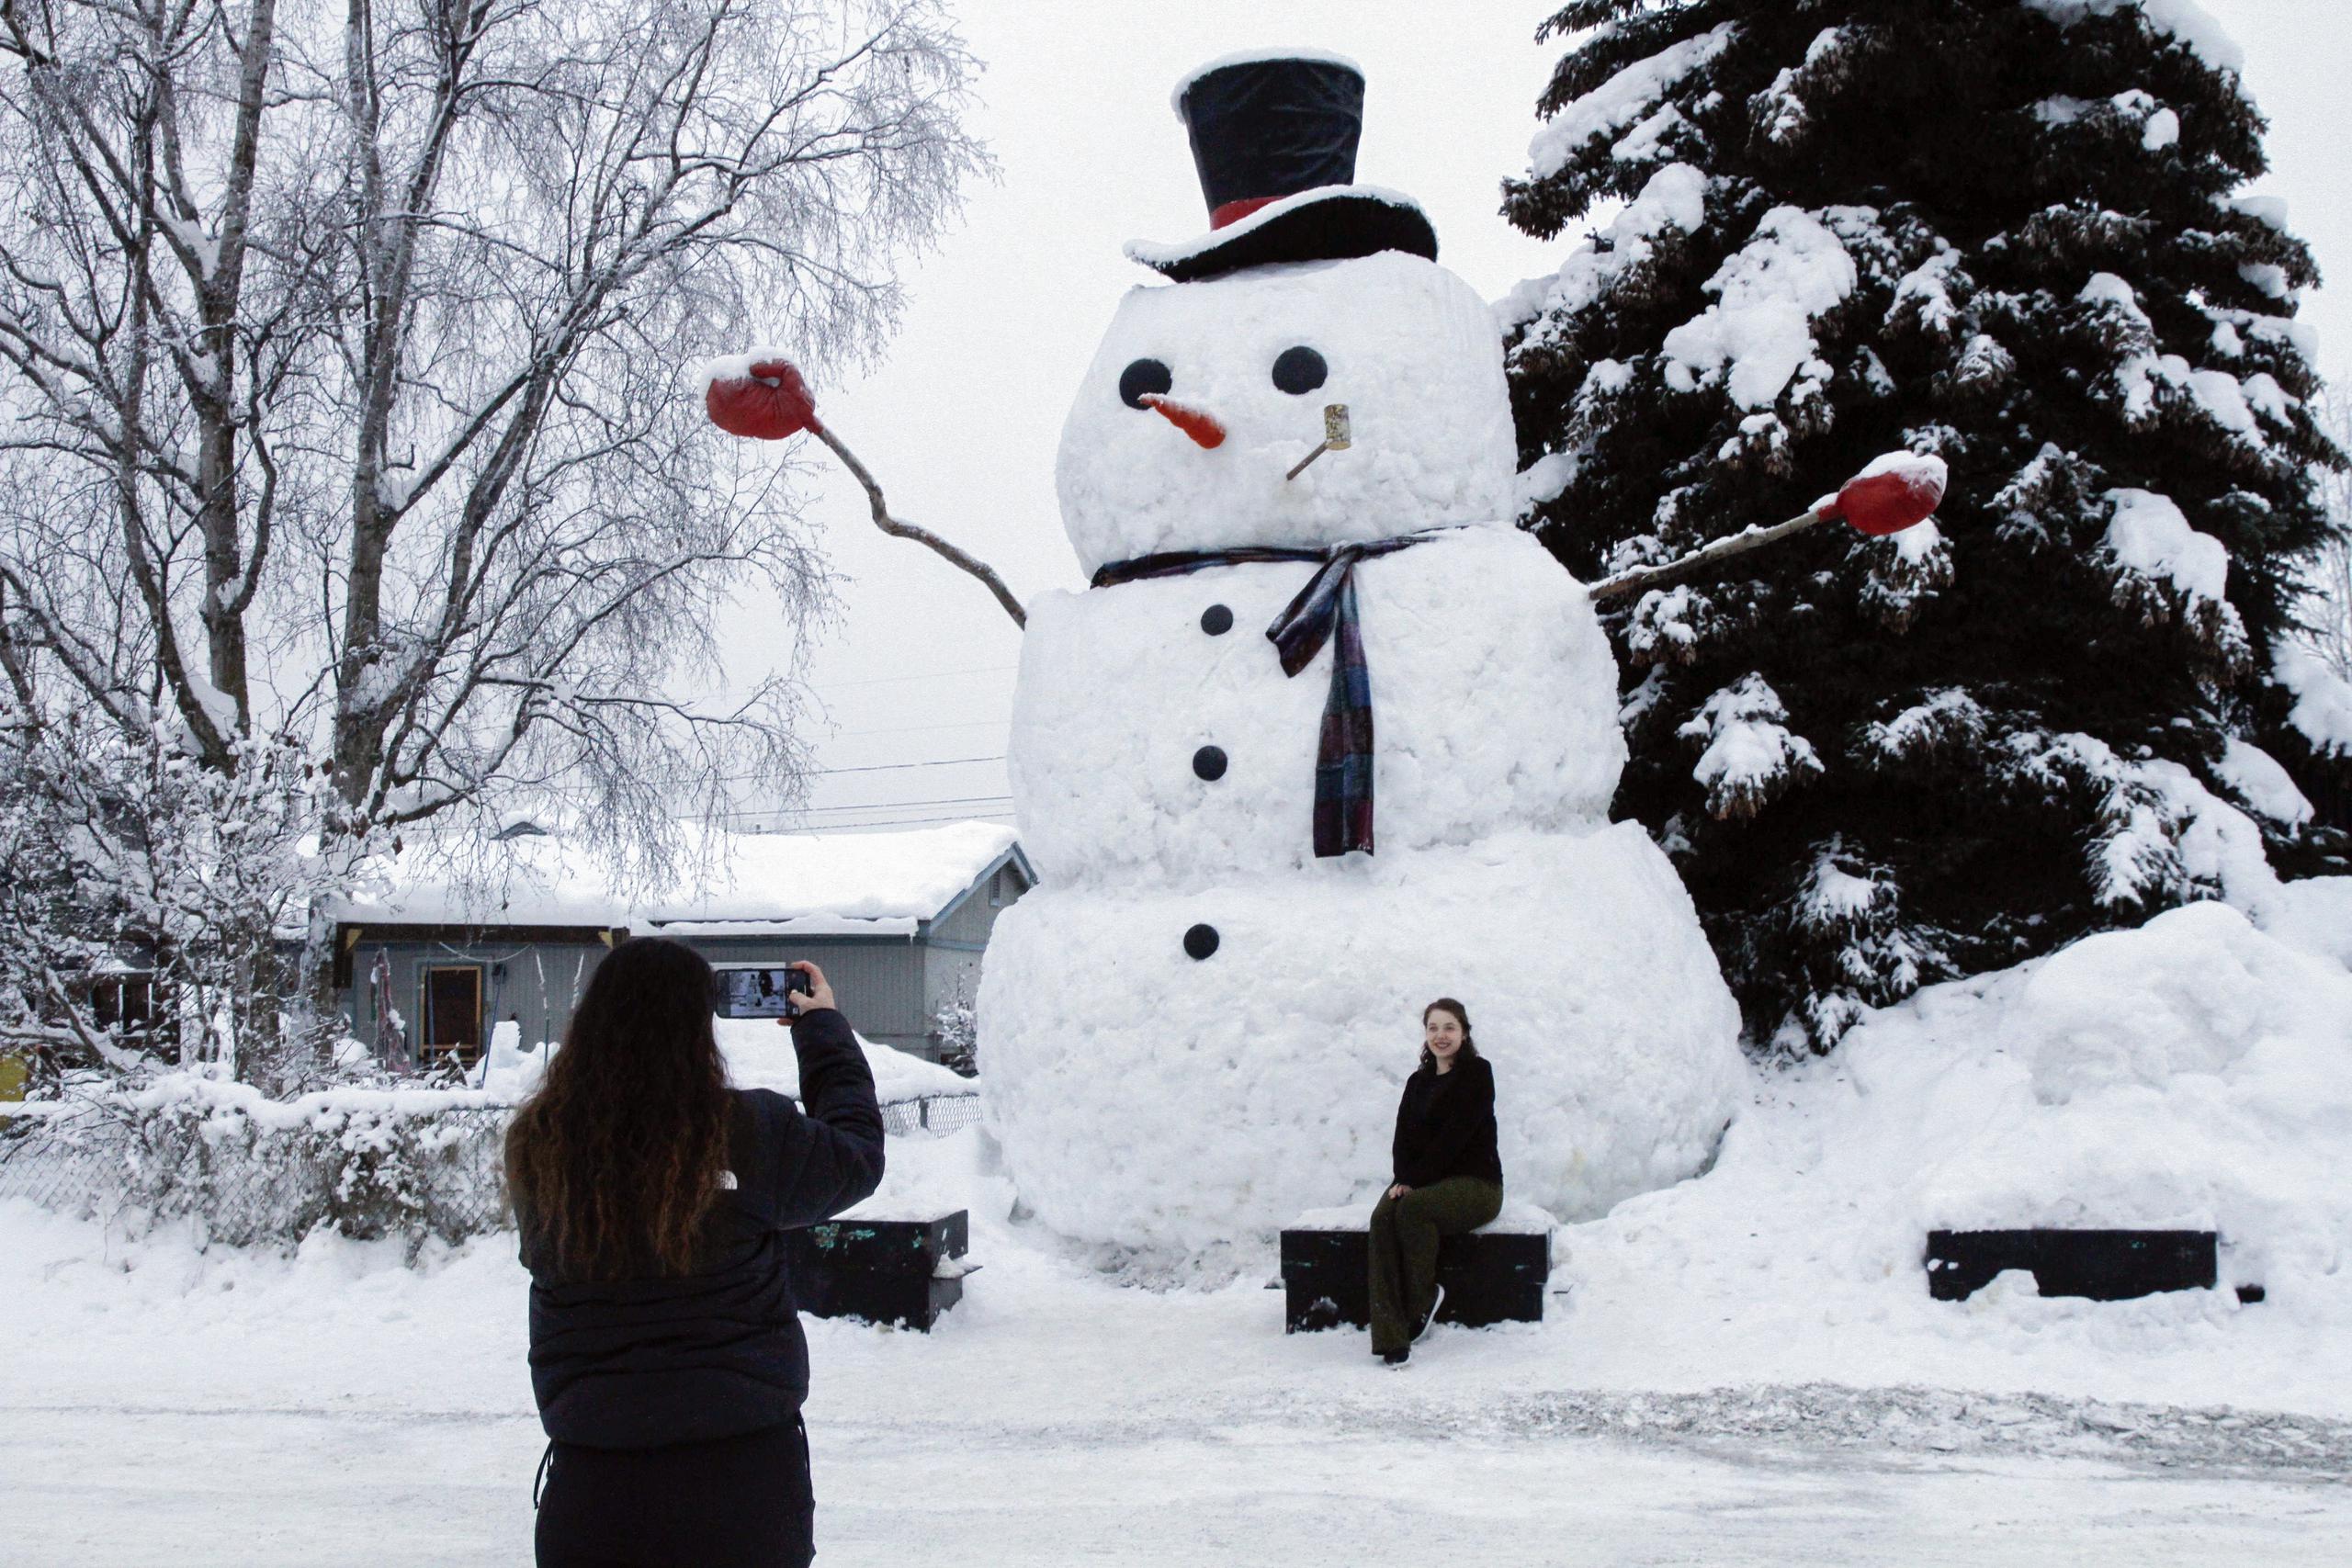 Isil Mico toma una foto de su cuñada Oznur Mico delante de Snowzilla, un muñeco de nieve de más de 6 metros de altura, en Anchorage, Alaska.